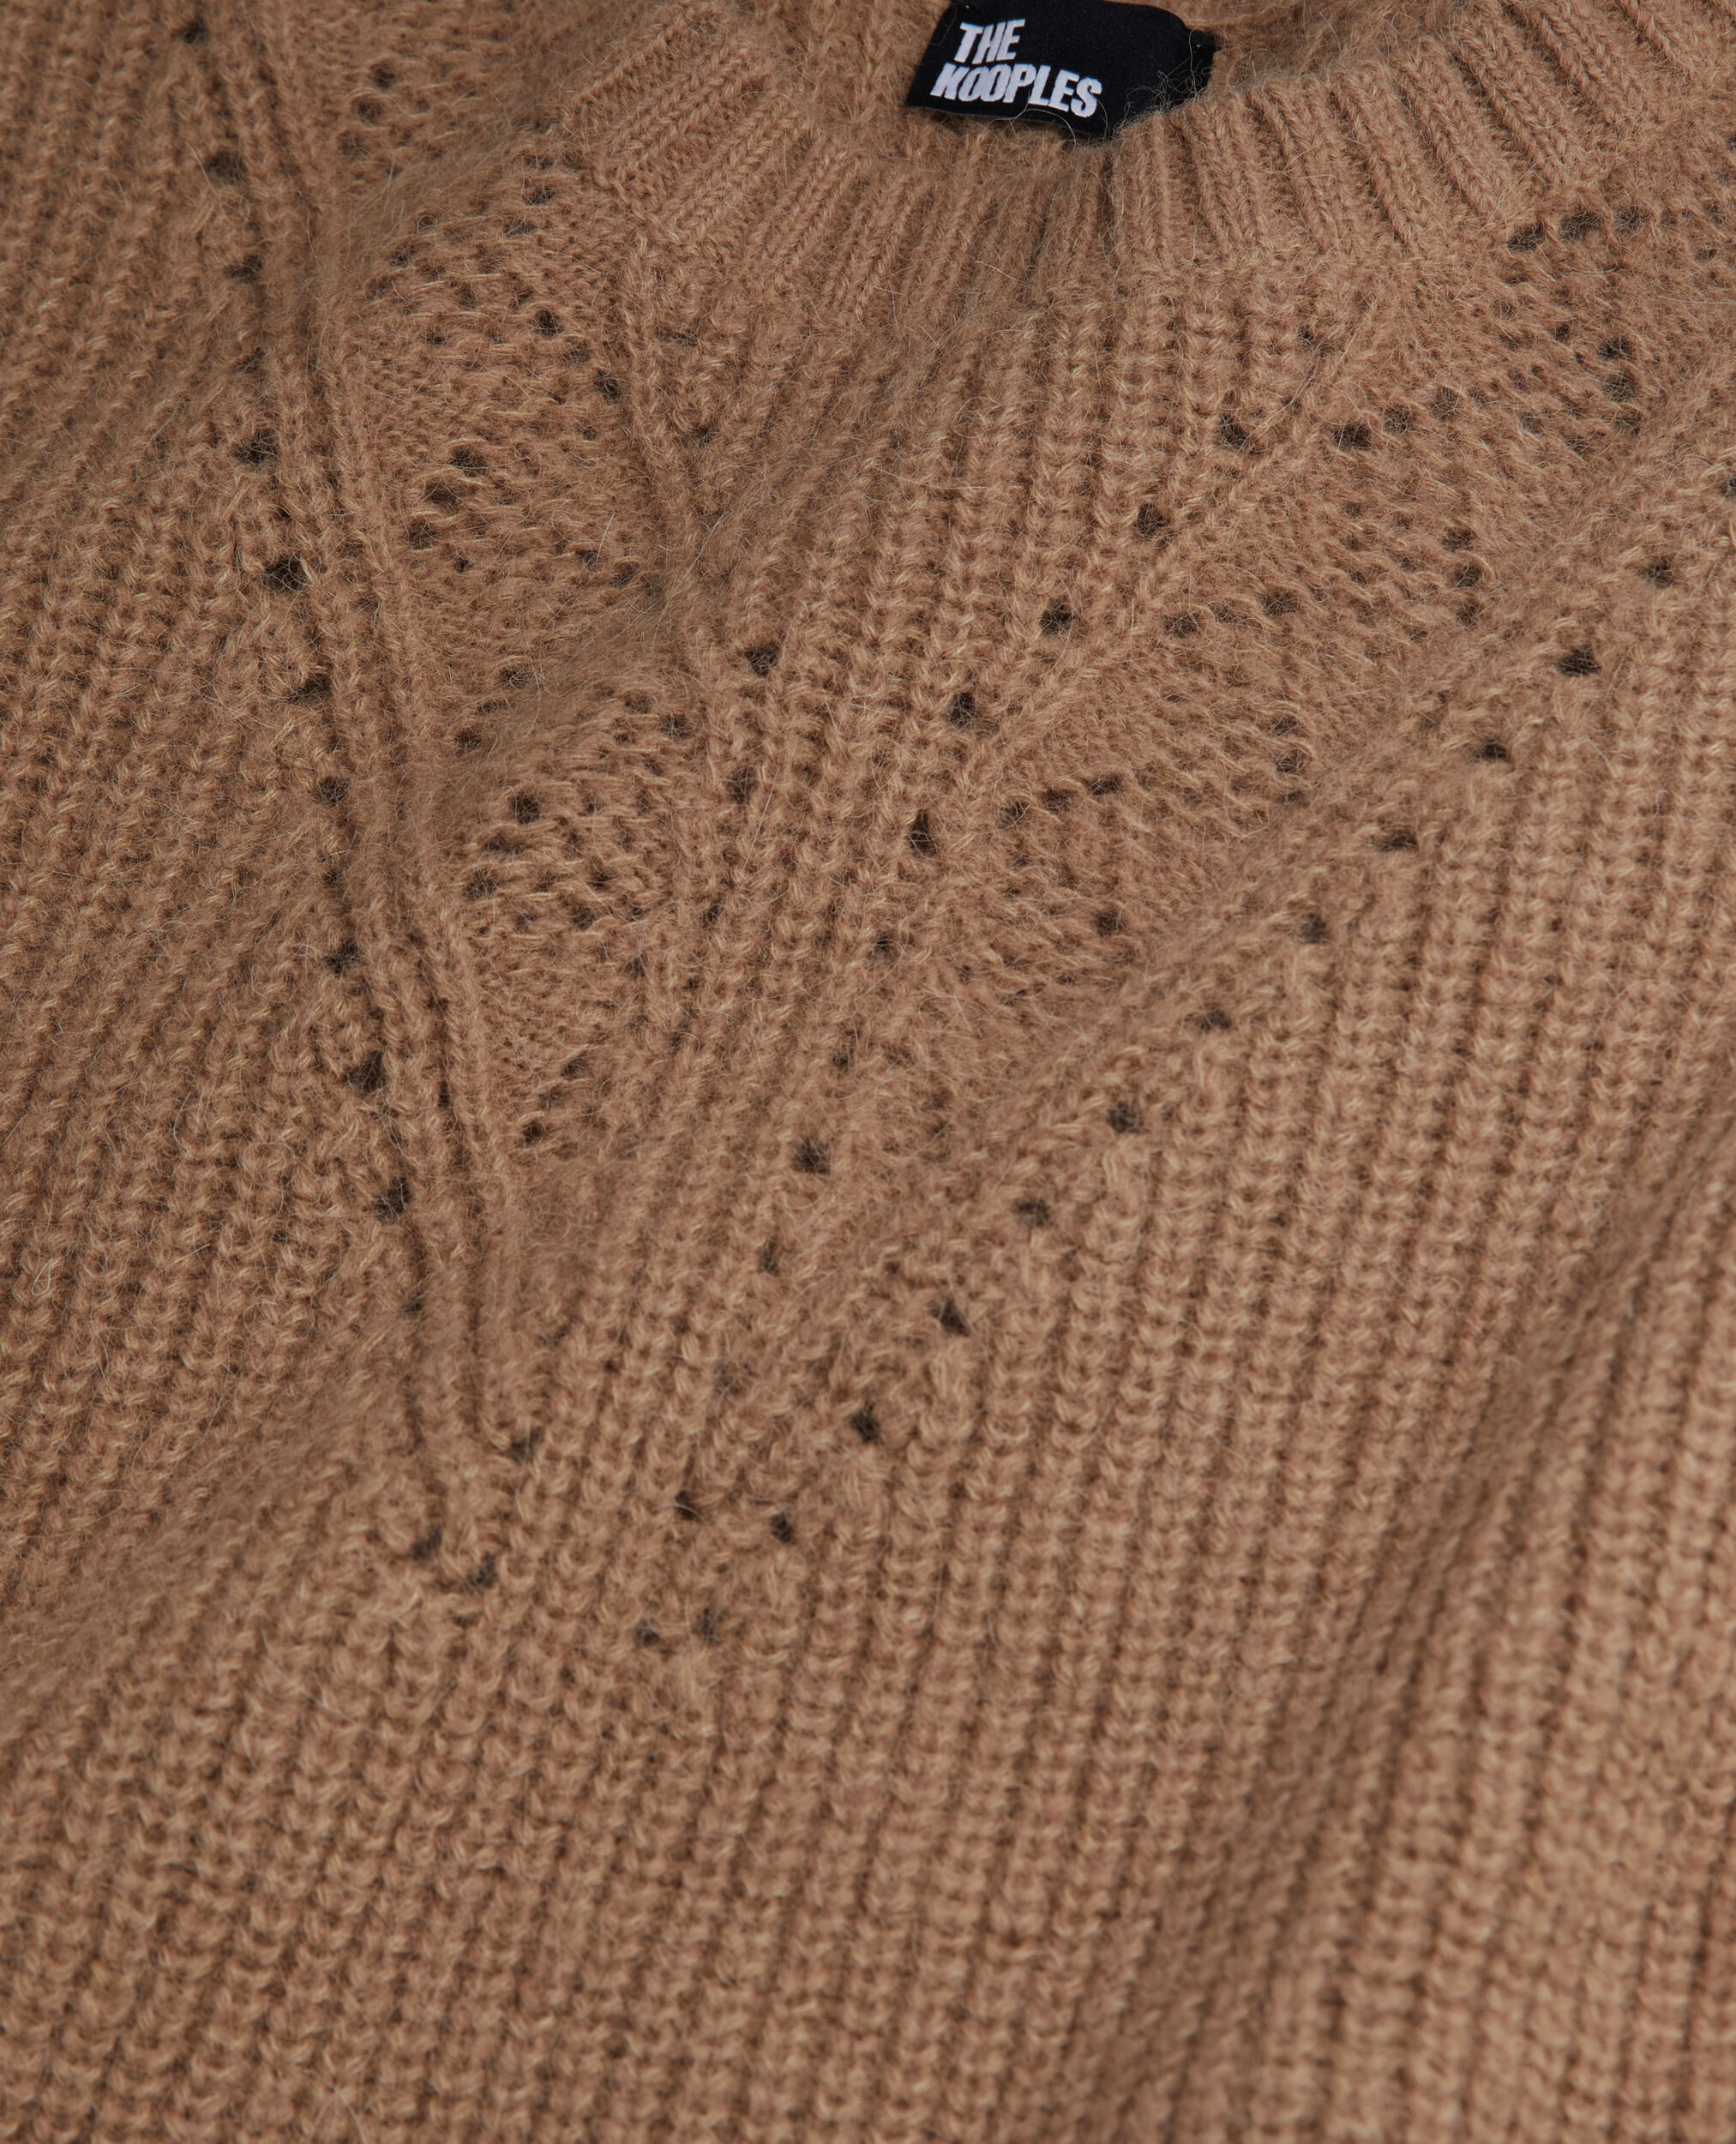 Camelfarbener Pullover aus einer Wollmischung, BROWN-BEIGE, hi-res image number null